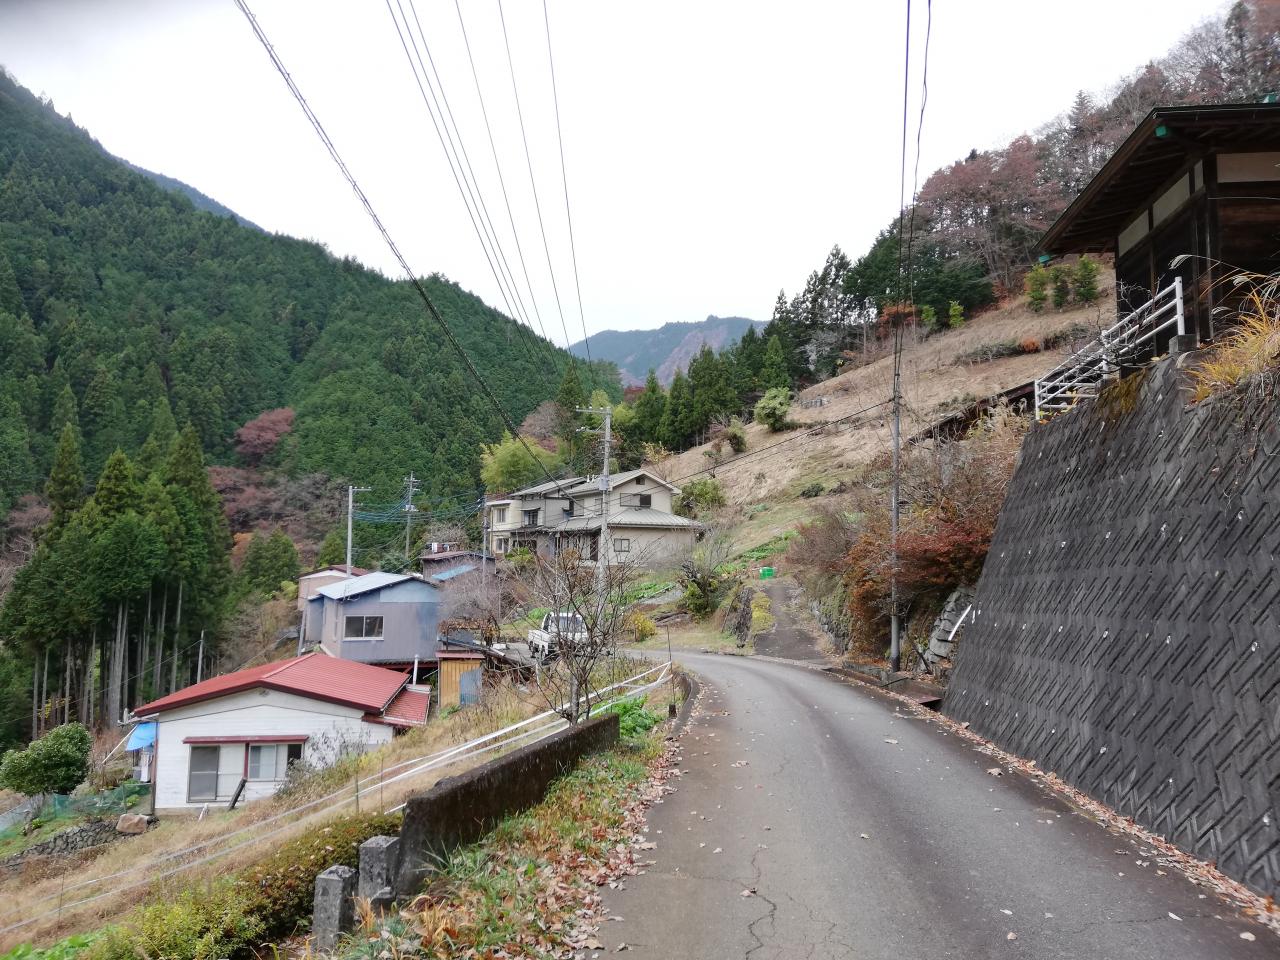 山肌に張り付くような腰掛集落 古道のその先 中群の山上集落と笹尾根越え Yamakei Online 山と溪谷社